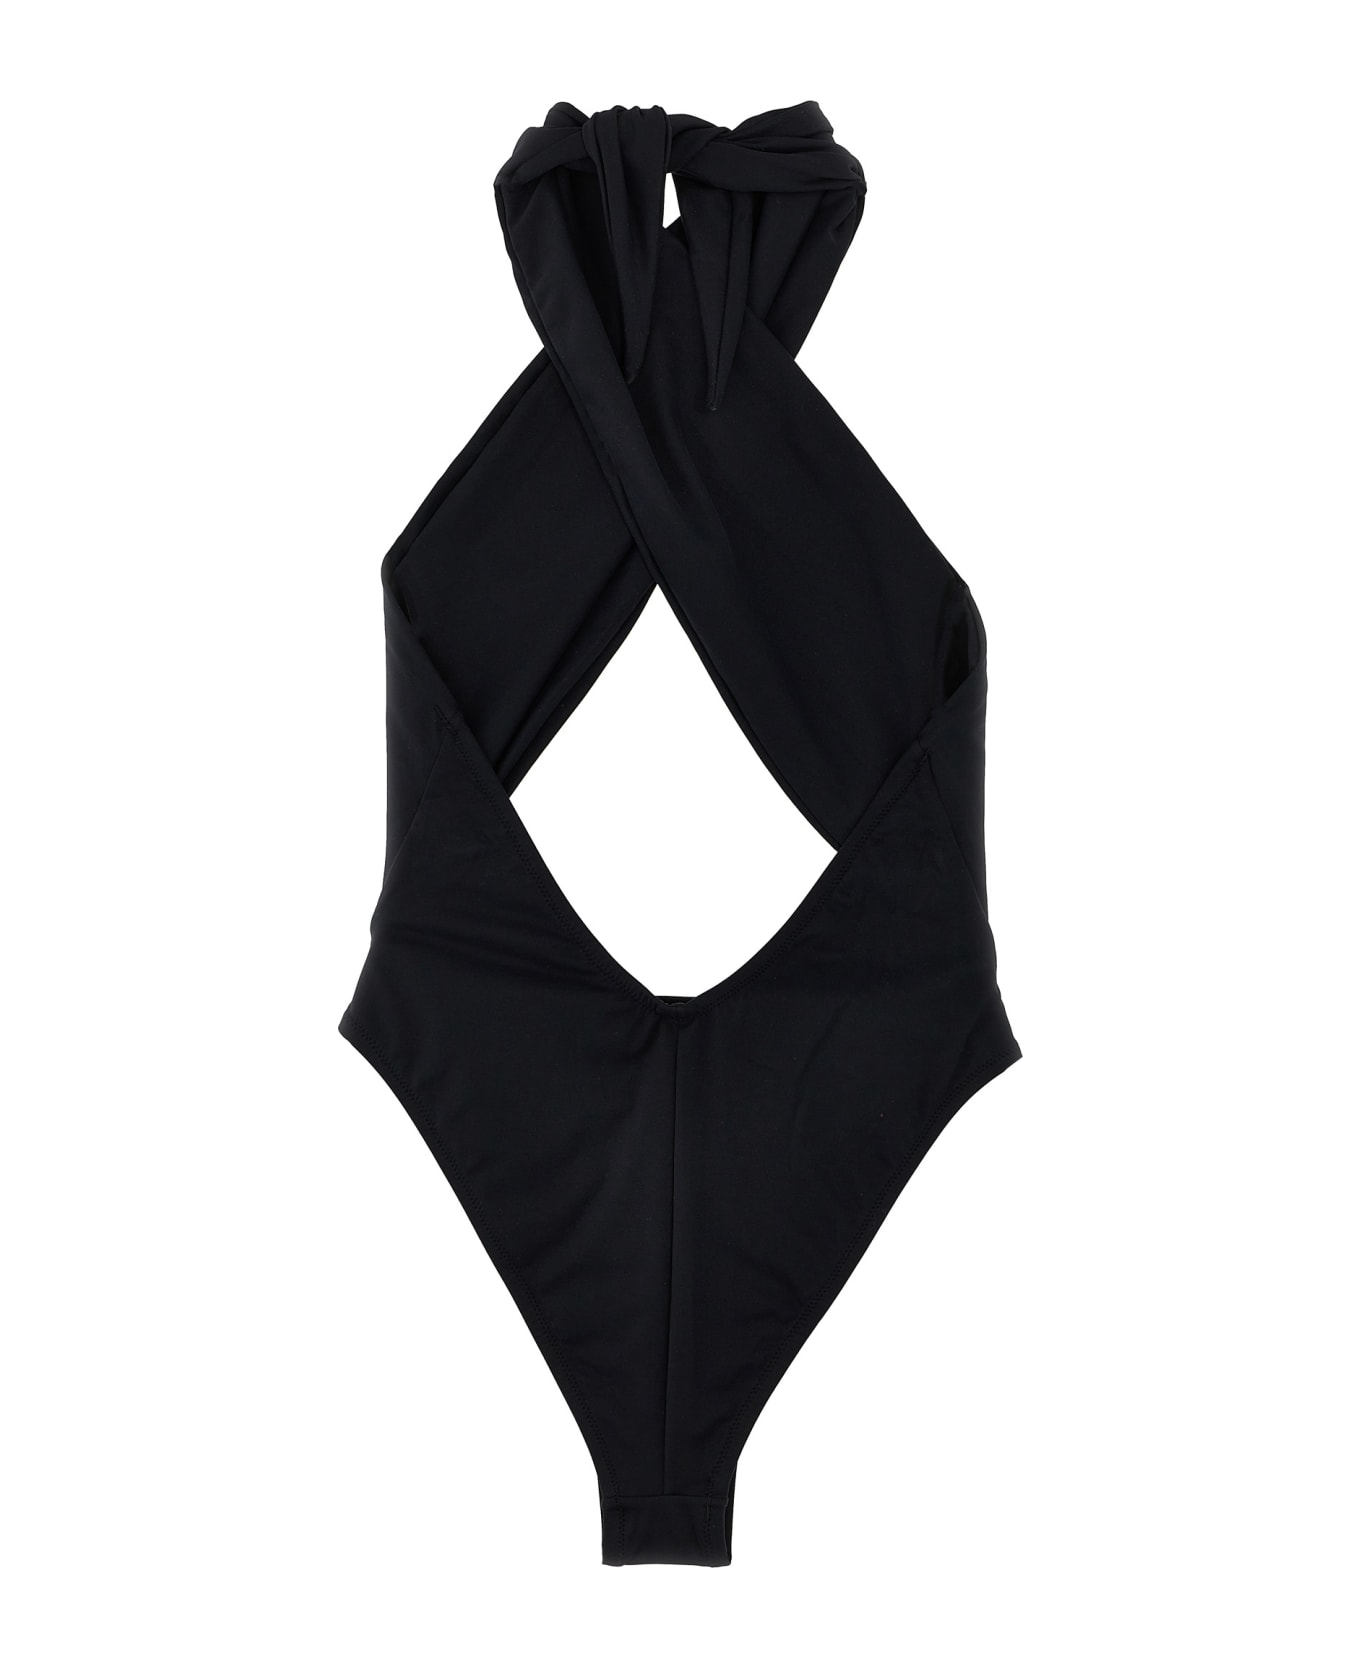 Reina Olga 'italian Stallion' One-piece Swimsuit - Black   水着